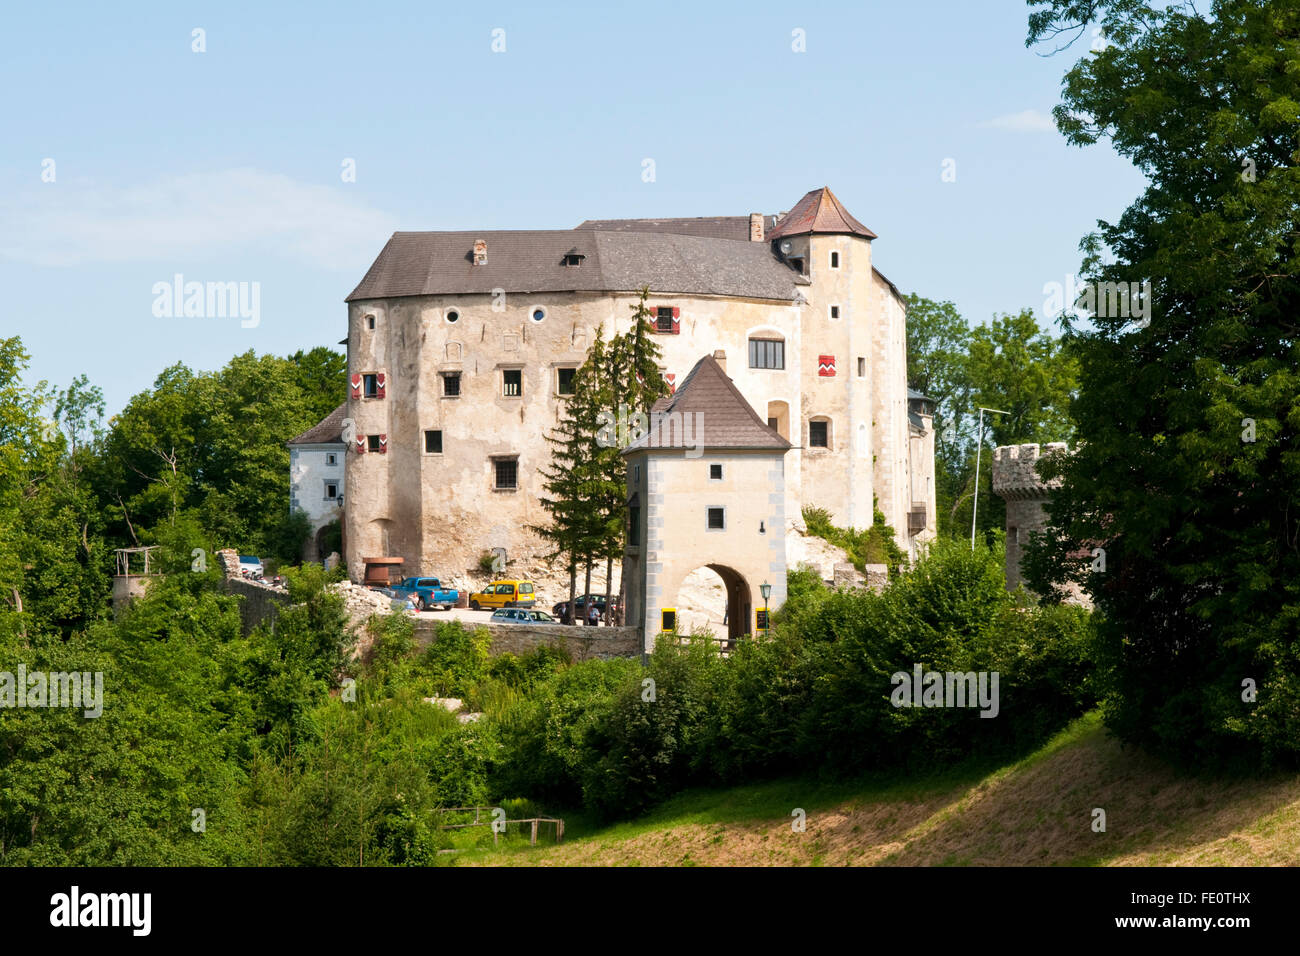 Burg Plankenstein, un château du 12ème siècle qui se dresse sur un promontoire rocheux en Autriche, maintenant un hôtel privé. Banque D'Images